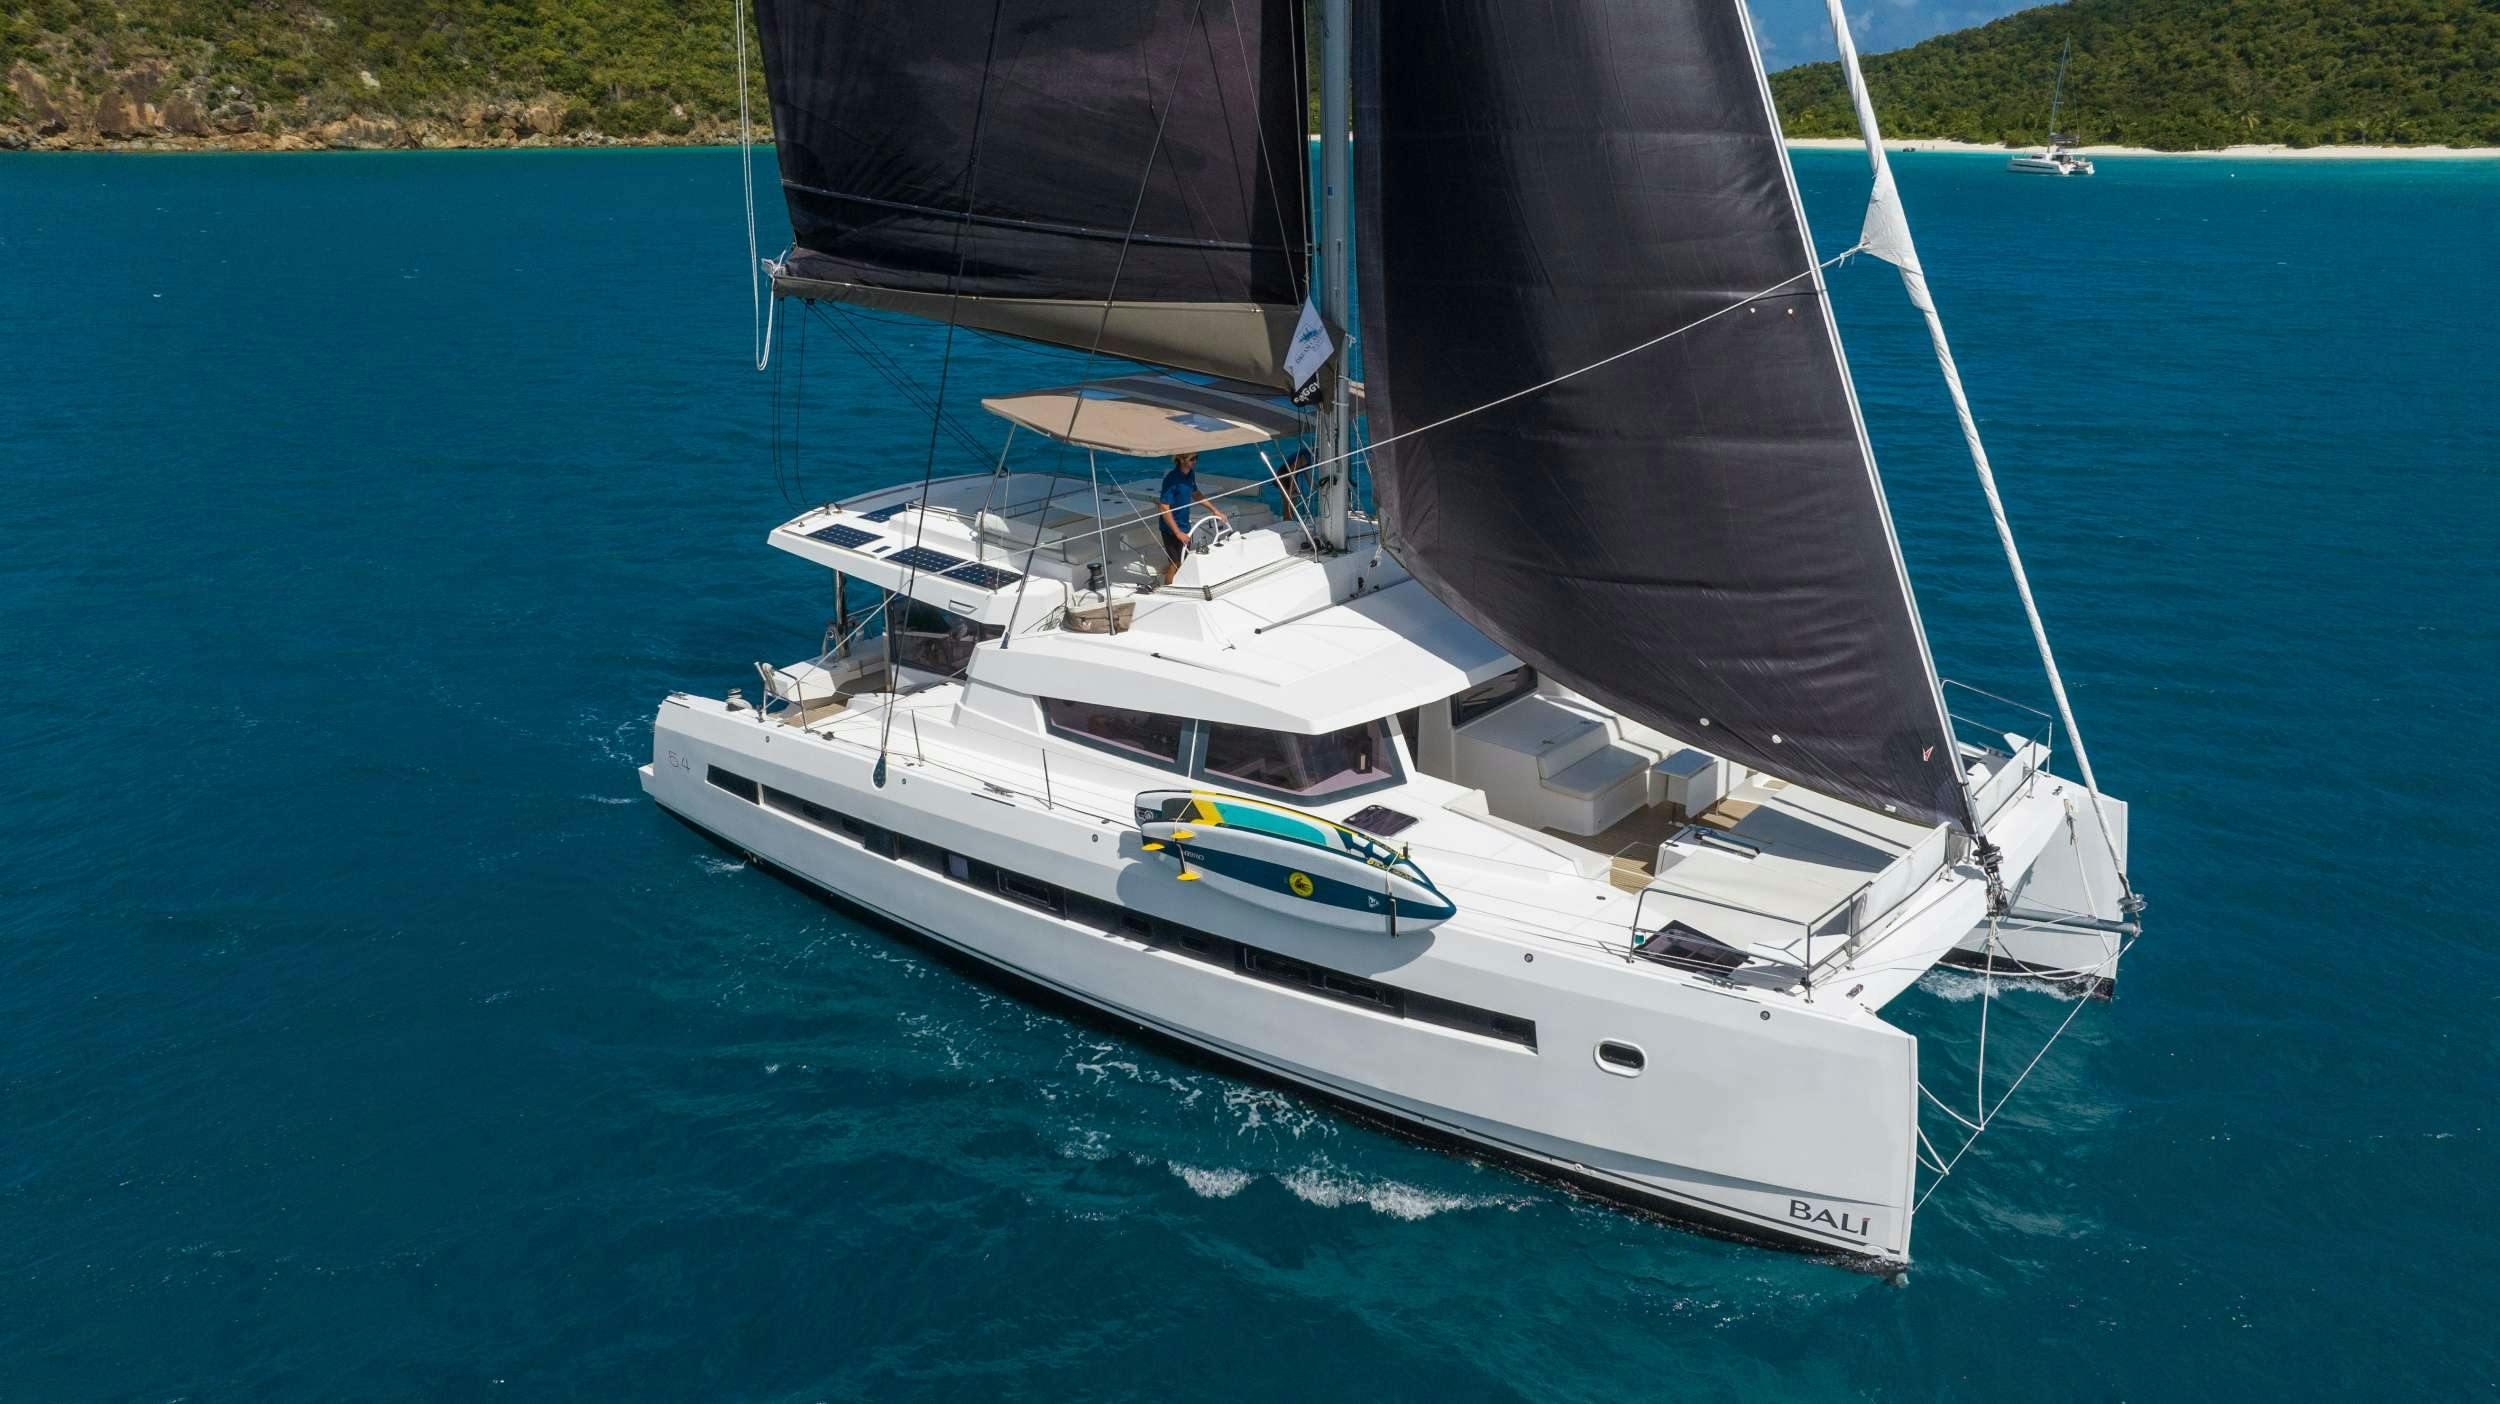 SUN DAZE 5.4 - Yacht Charter Marigot & Boat hire in Caribbean 1